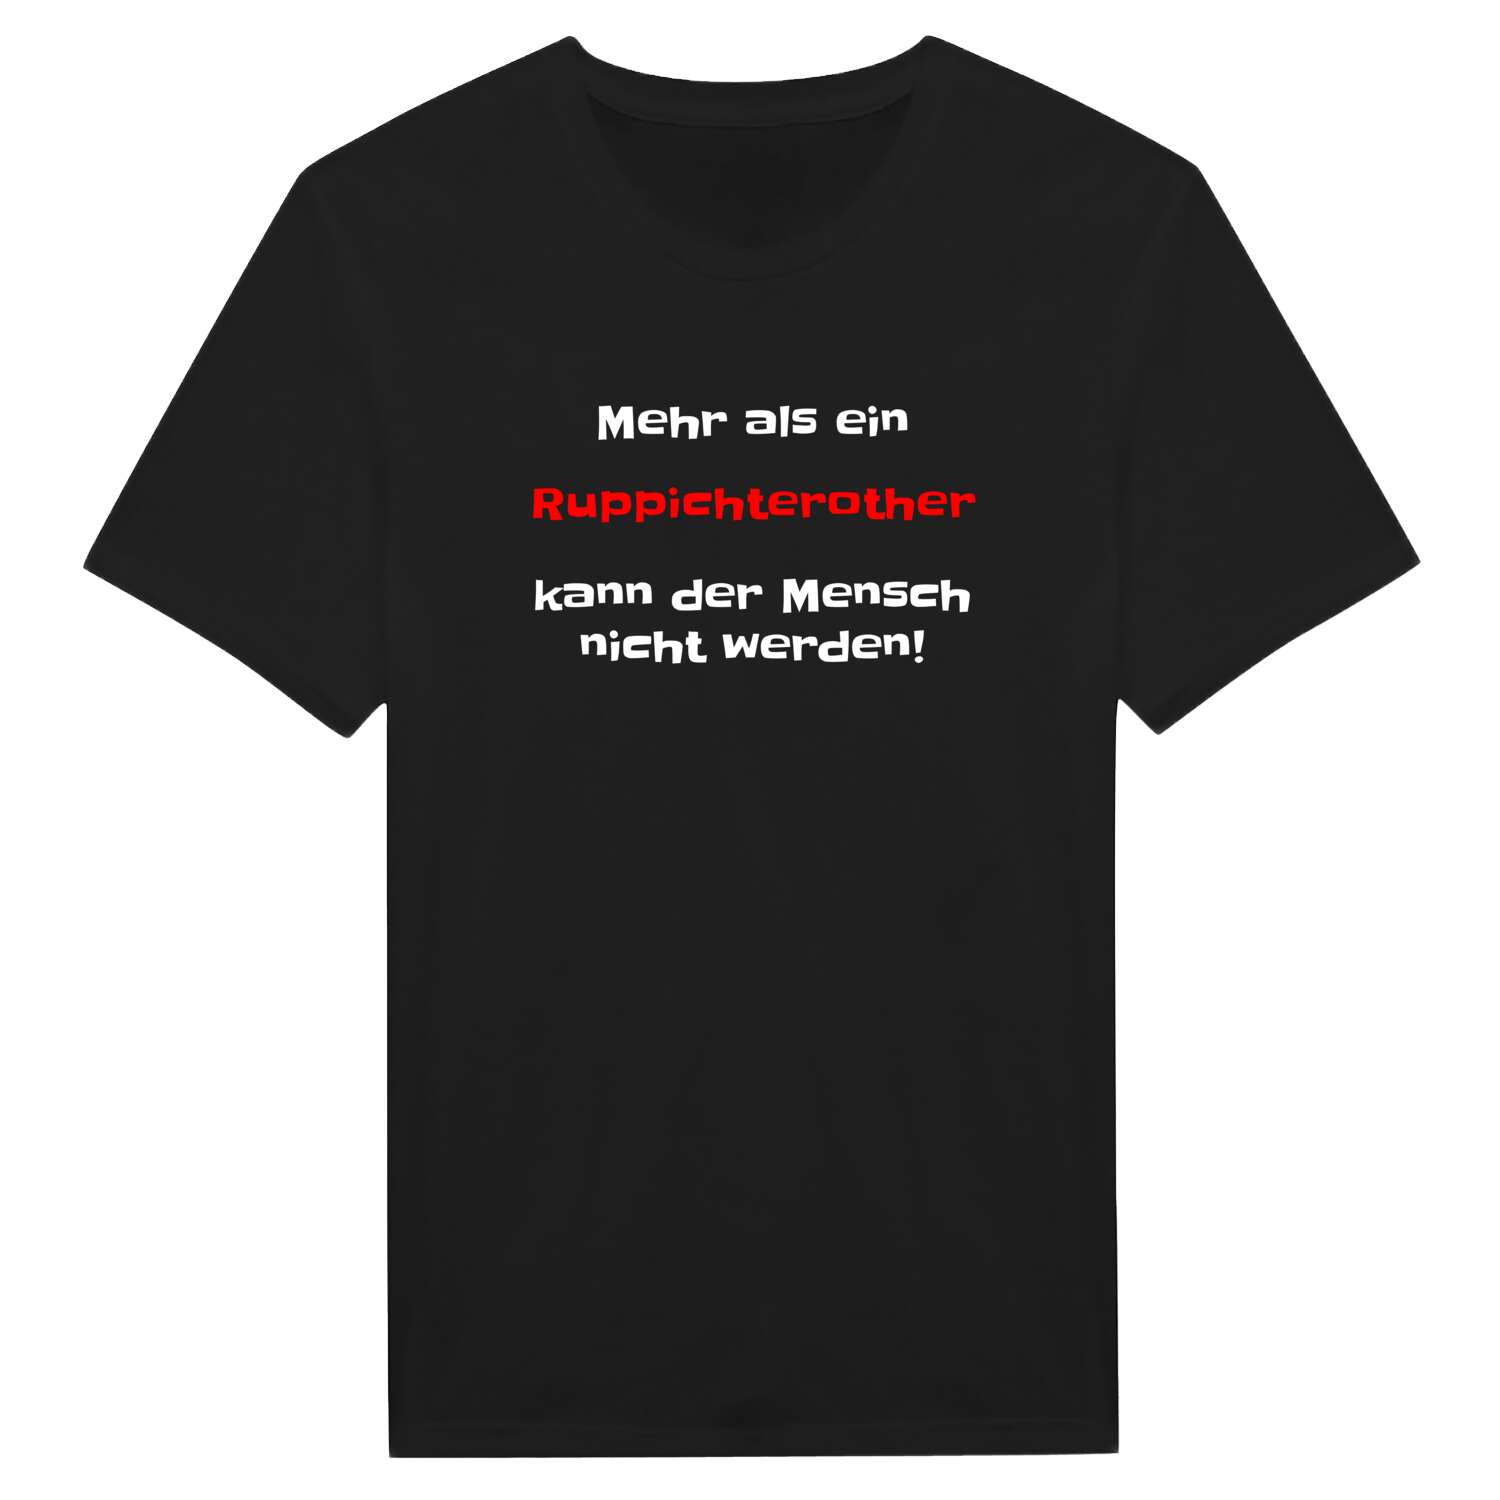 Ruppichteroth T-Shirt »Mehr als ein«